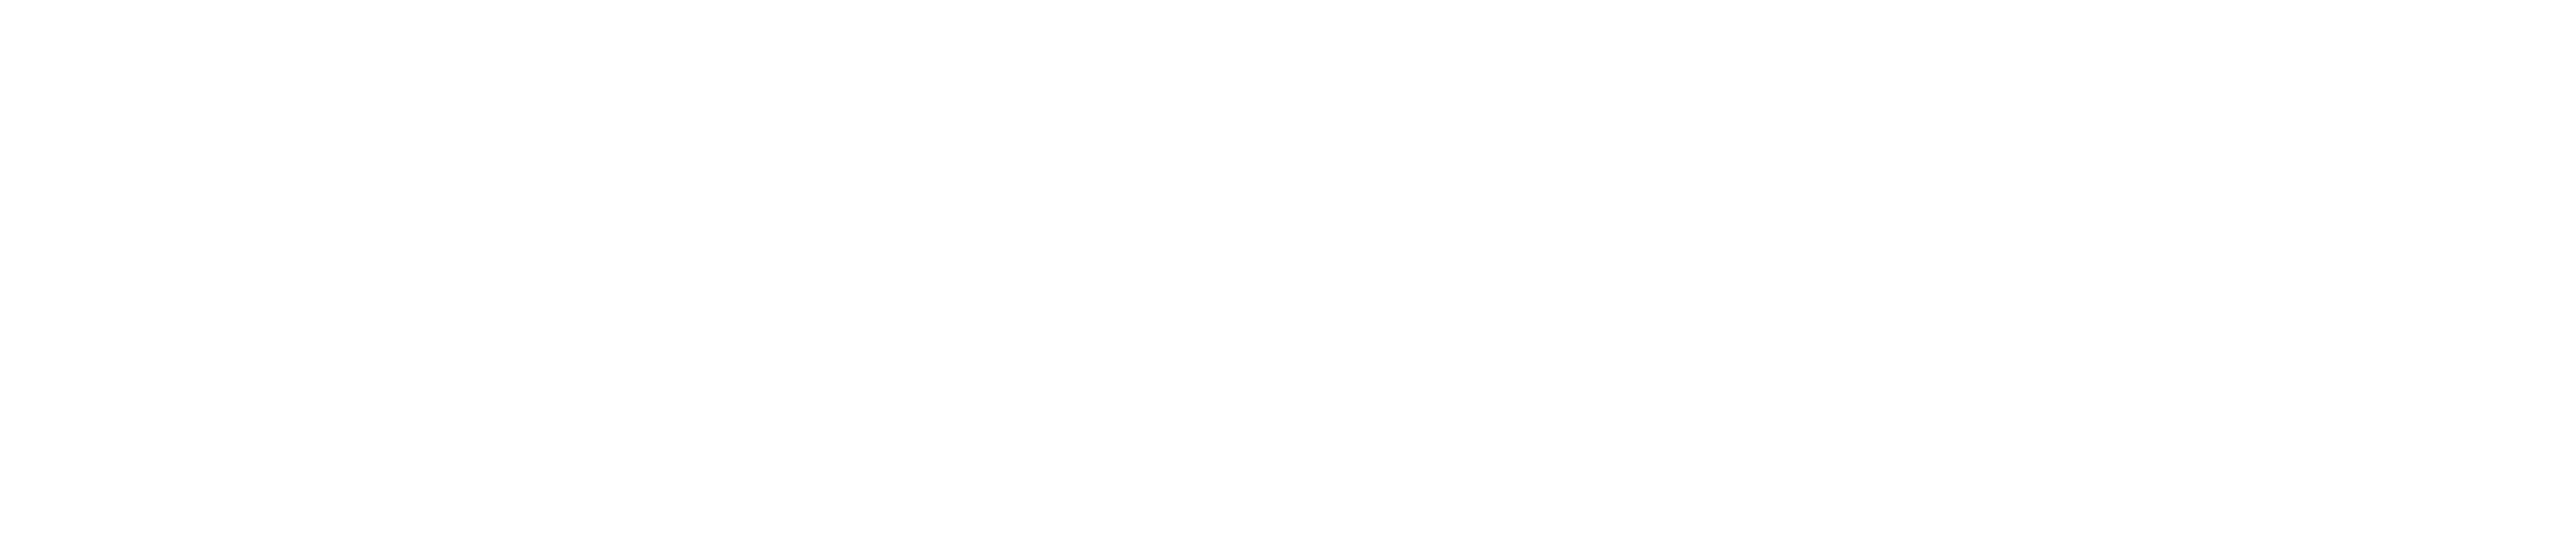 TheAlliance_white_logo